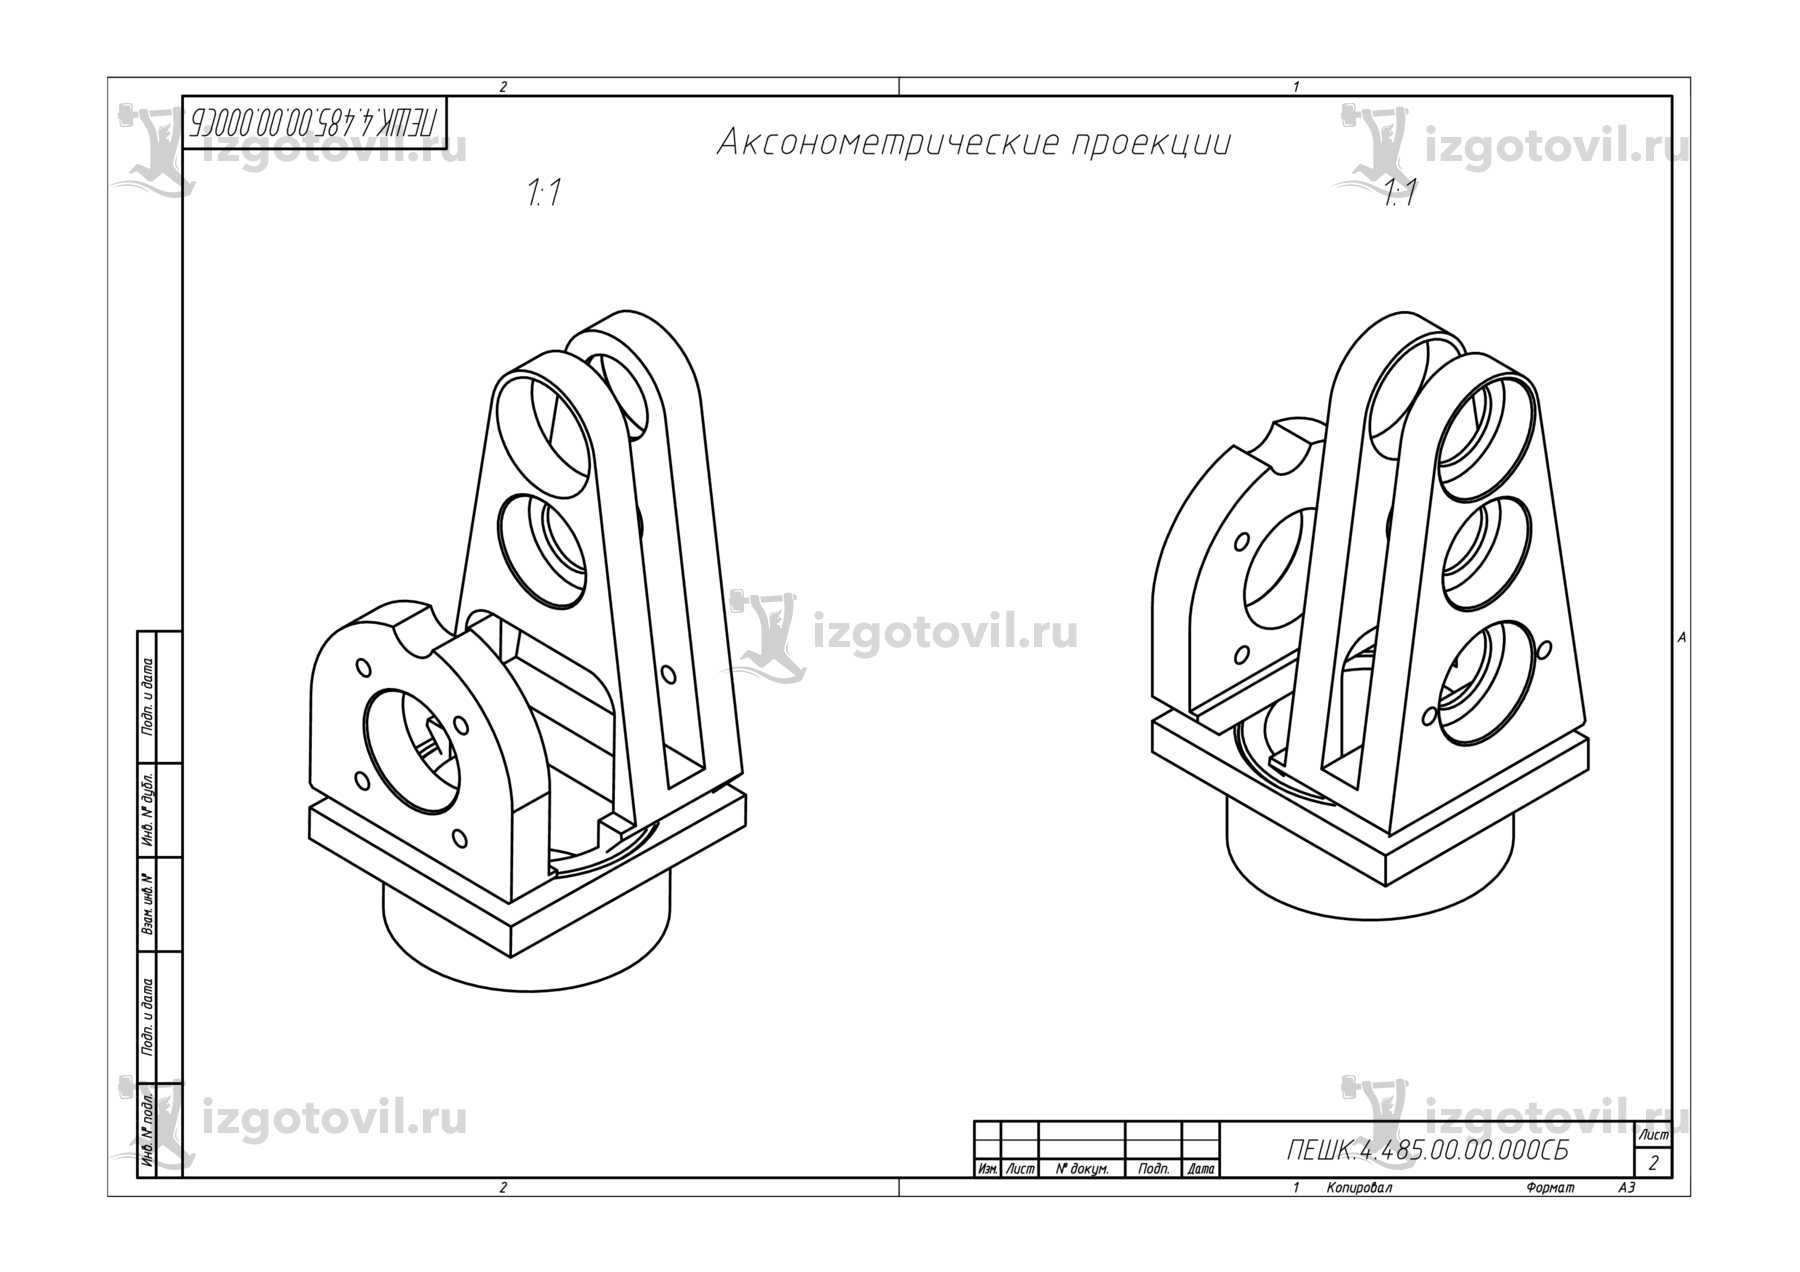 Изготовление технологических деталей (колеса зубчатые, платик, щеки, бобышка, корпус для ЛР-164).